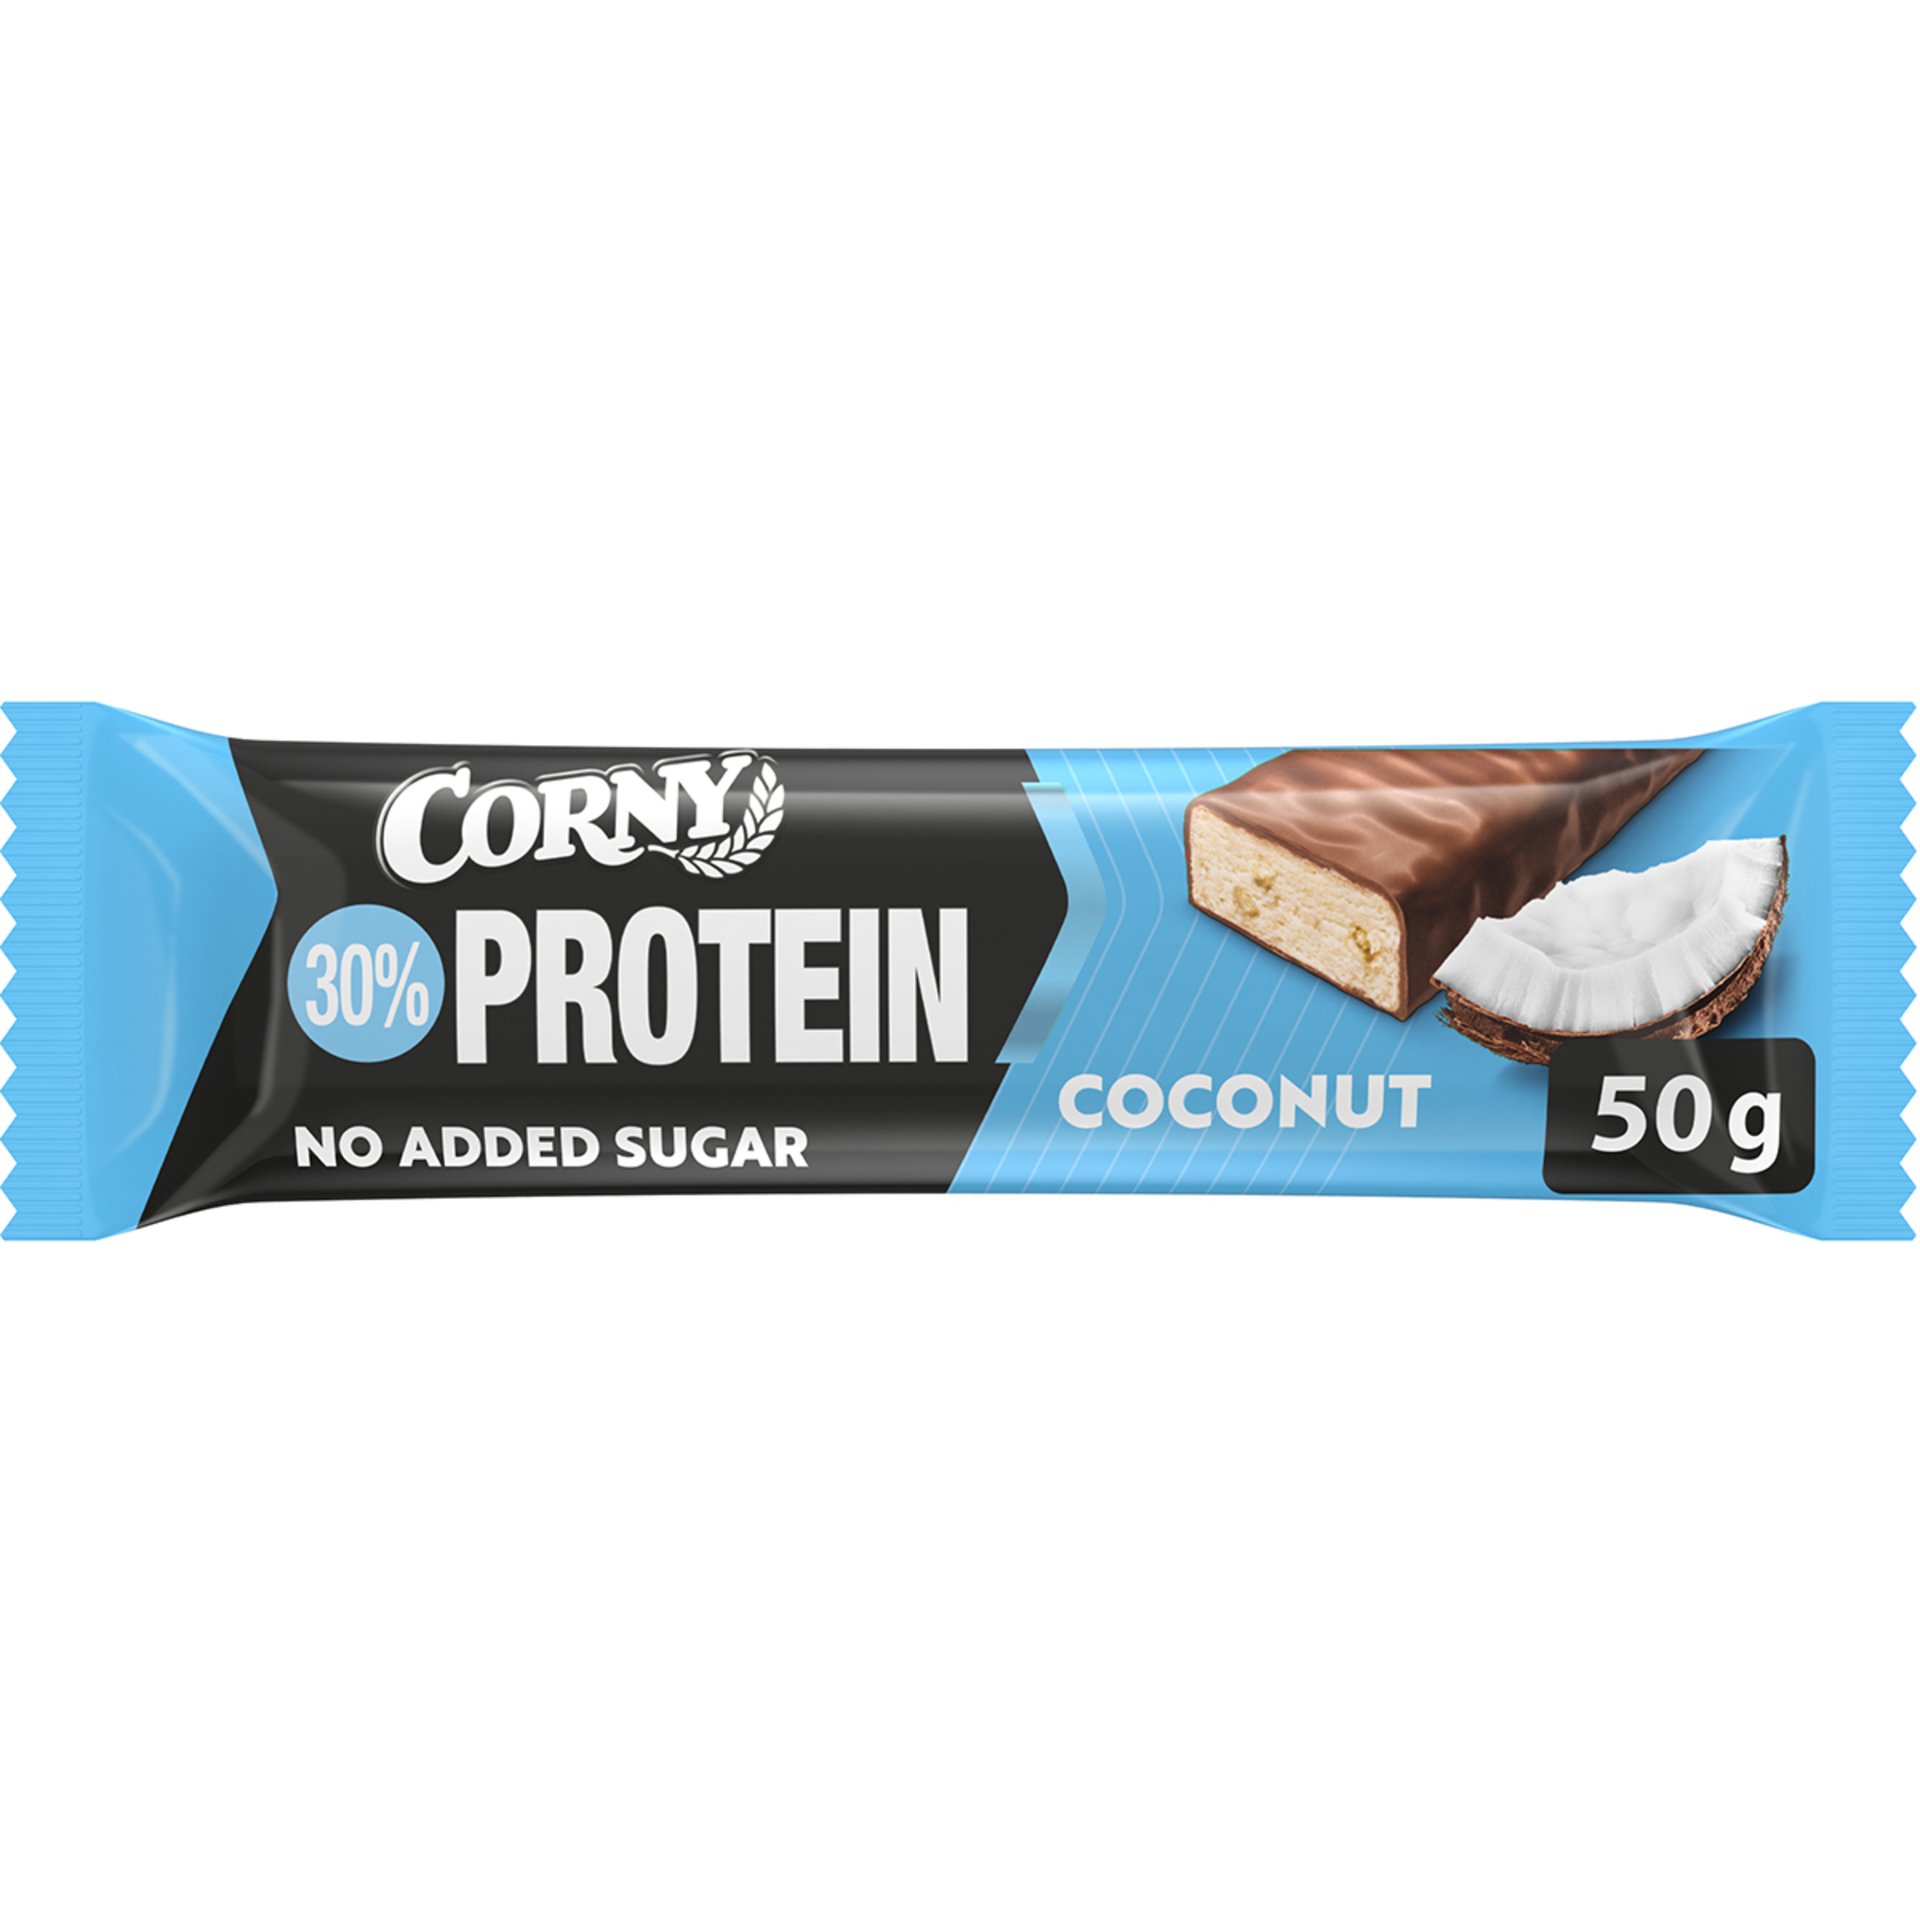 Corny Protein 30% proteínová tyčinka kokos 50 g